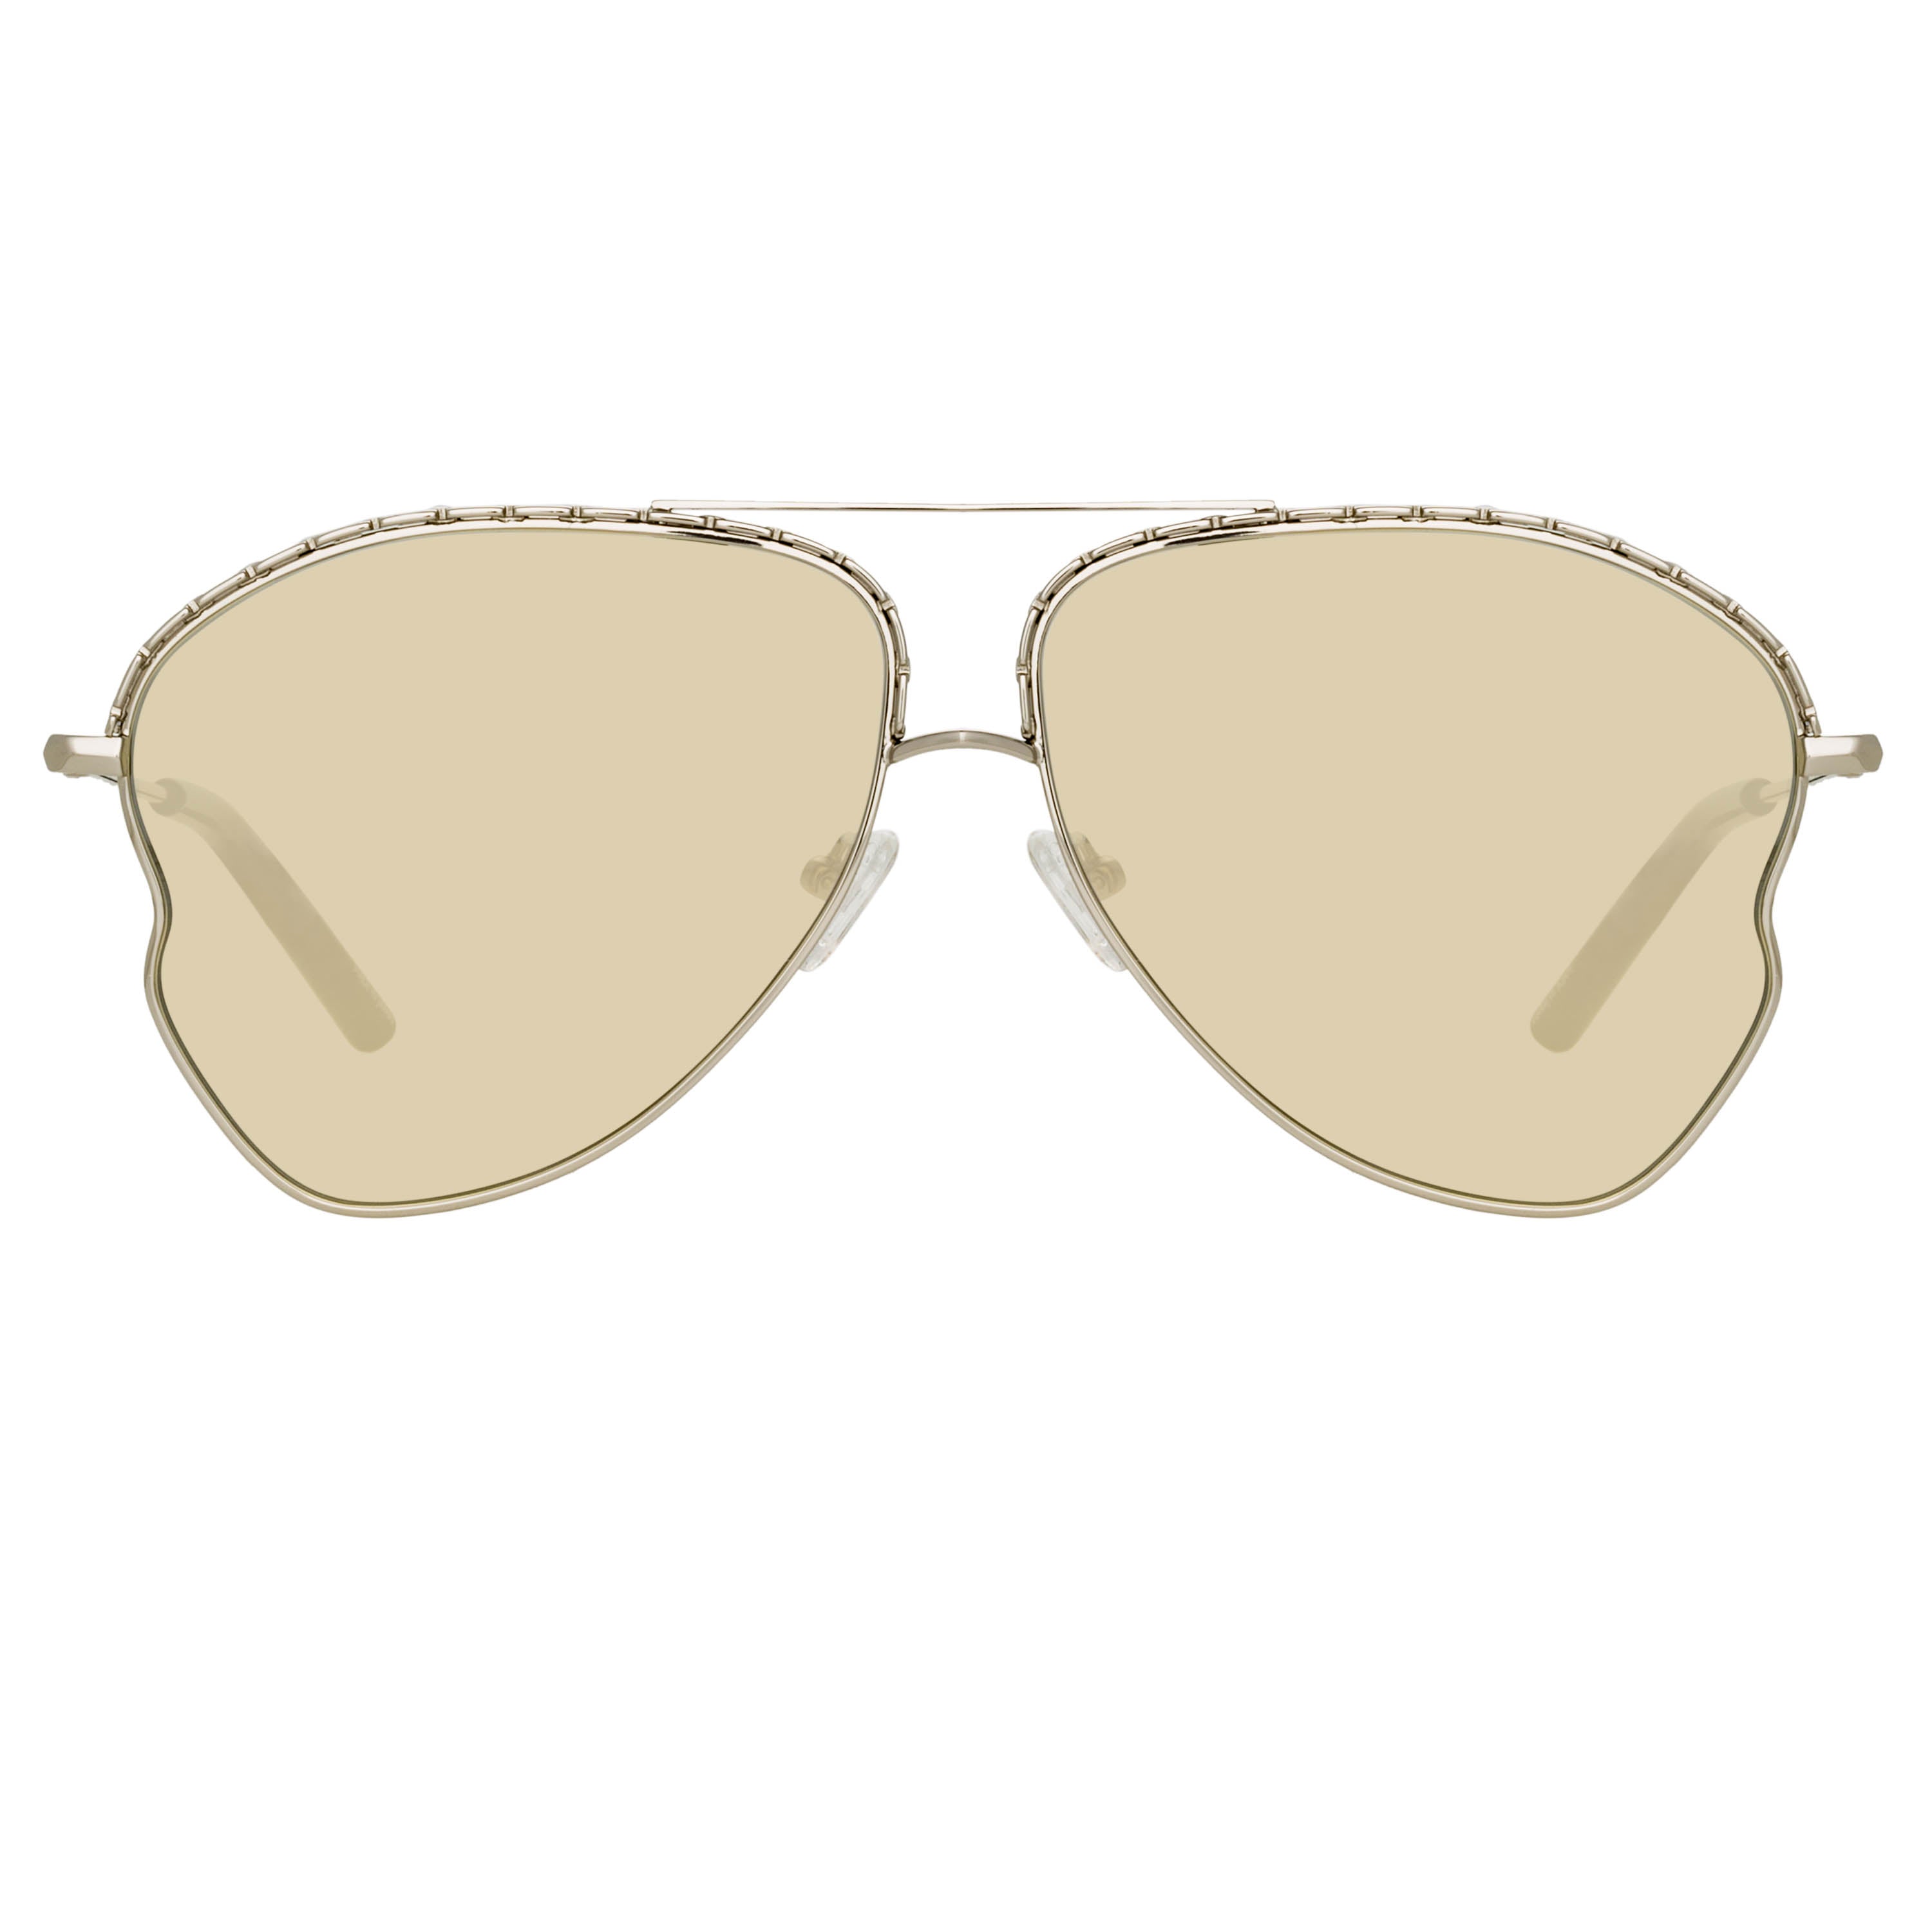 Matthew Williamson Lupin Sunglasses in Silver